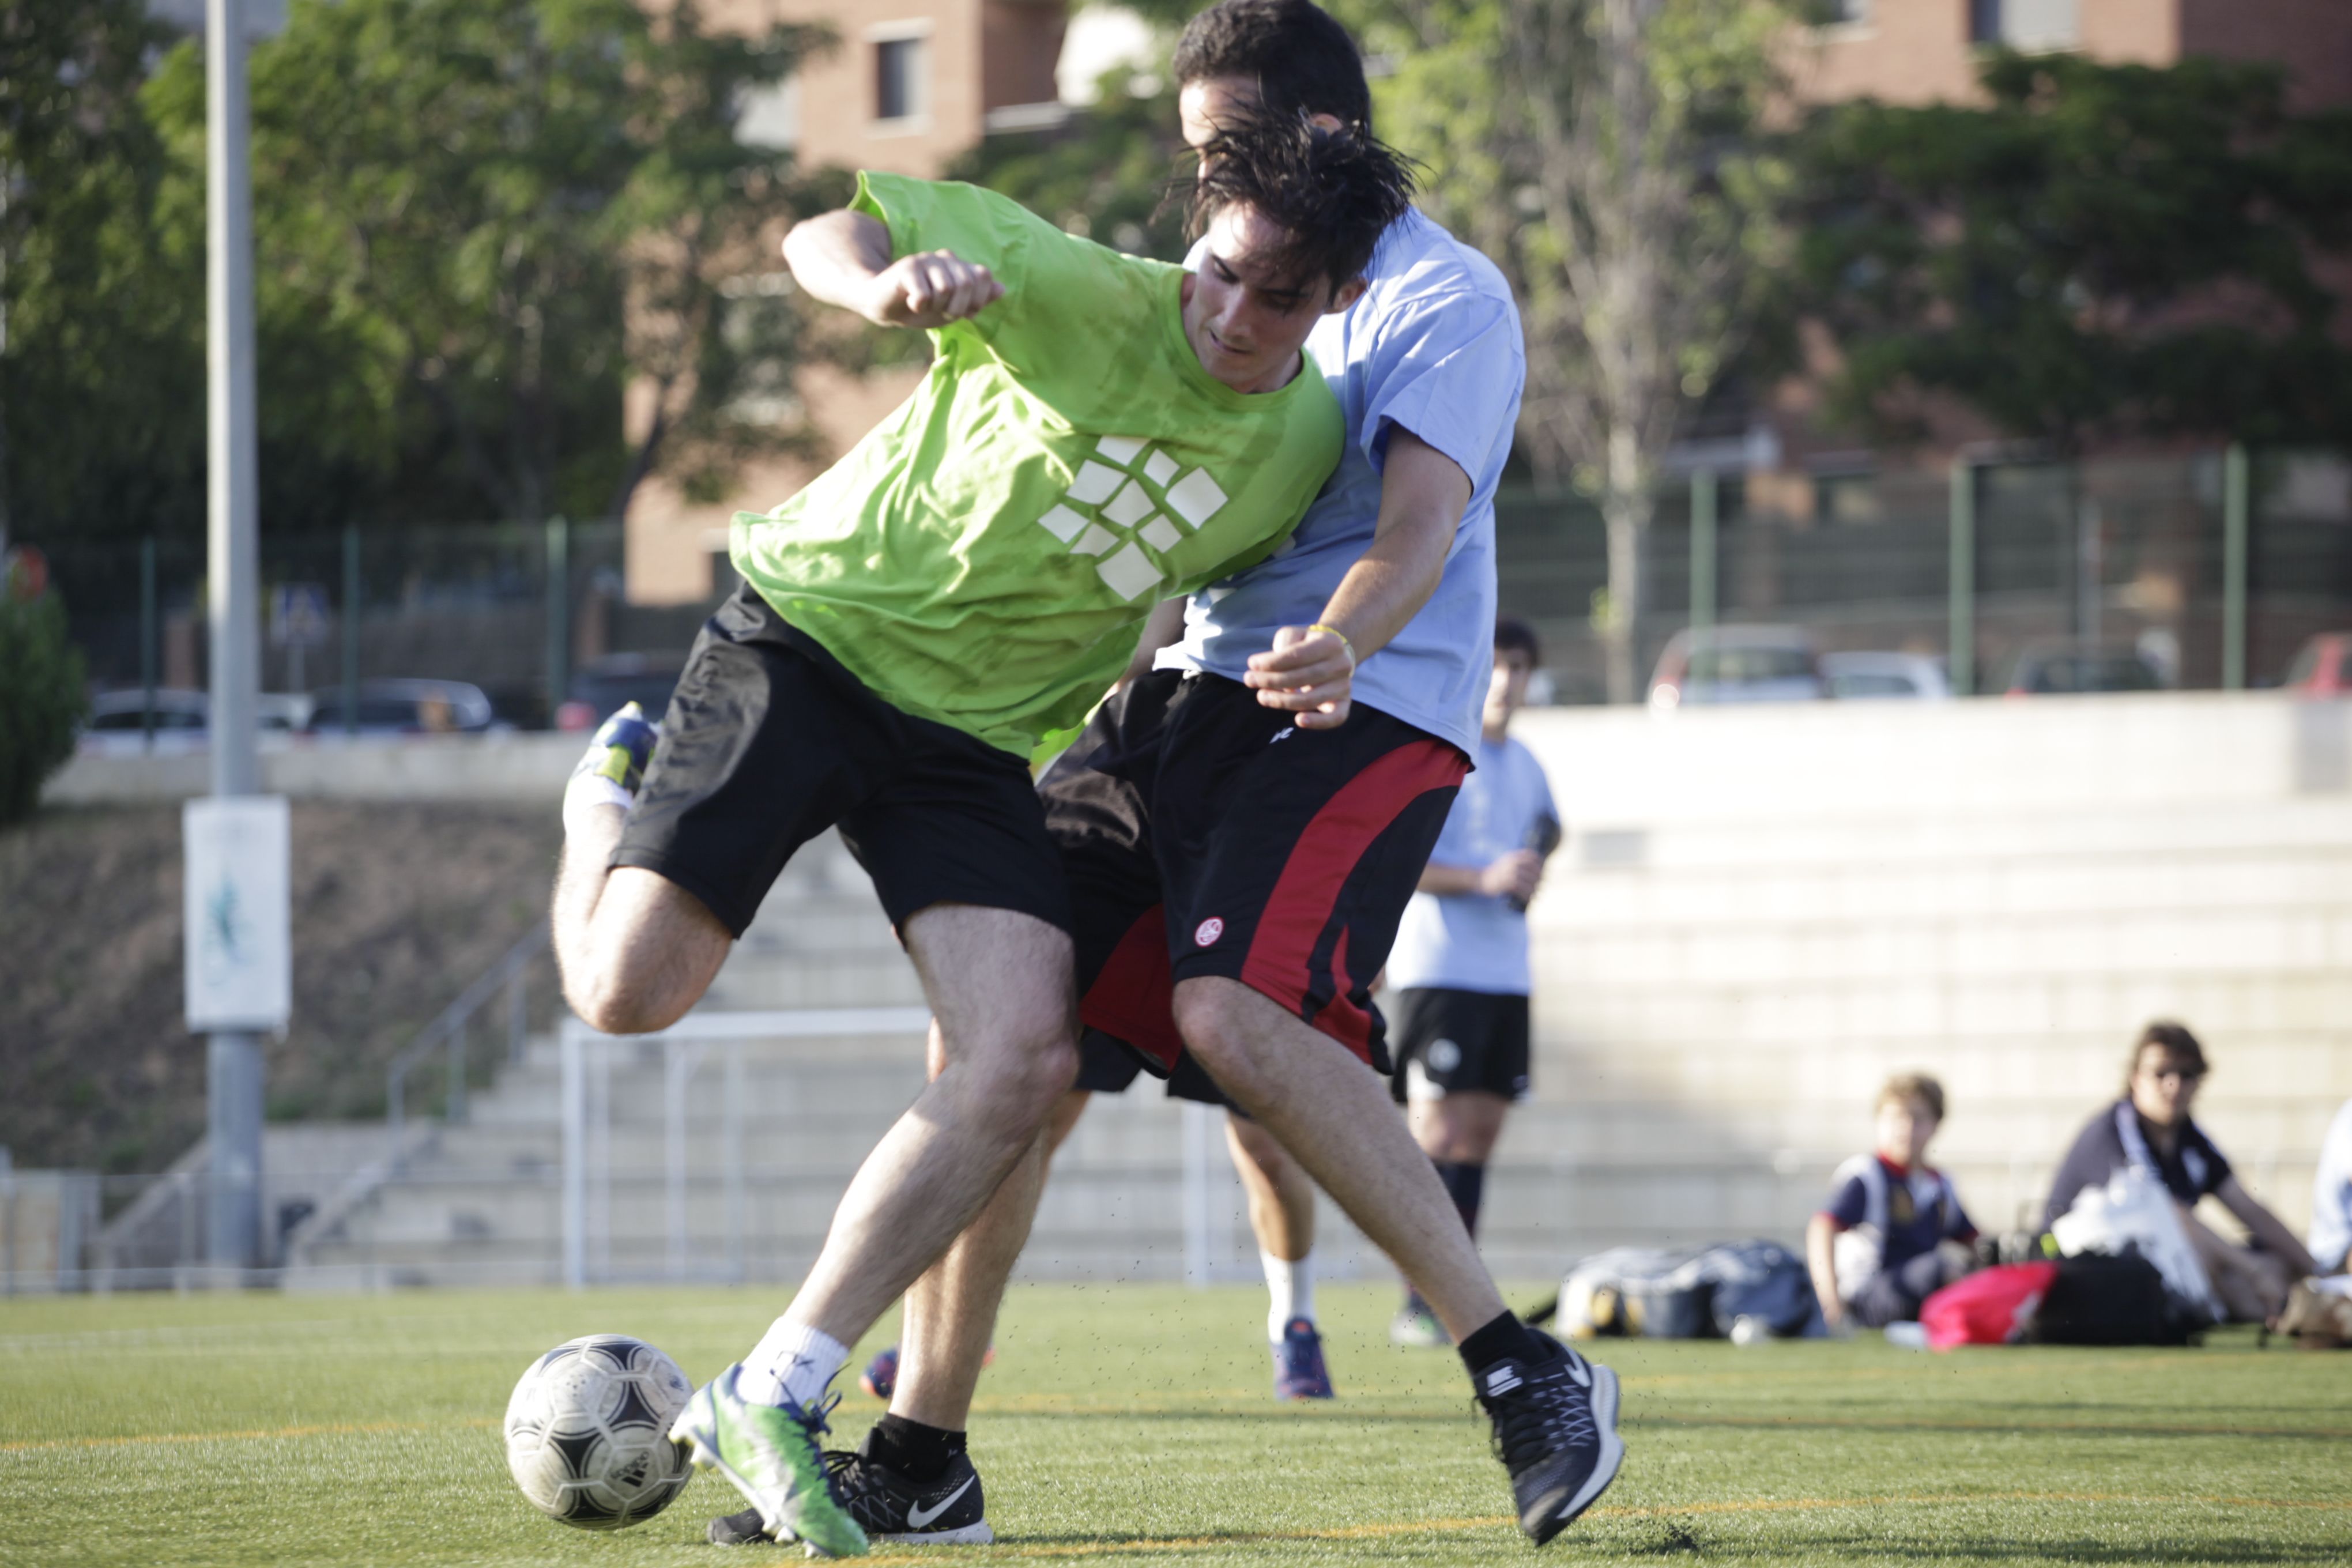  Ja s'han jugat 11 edicions del Torneig Alguna Pregunta Menys? de futbol 7, que enfronta polítics i periodistes. FOTO: Artur Ribera